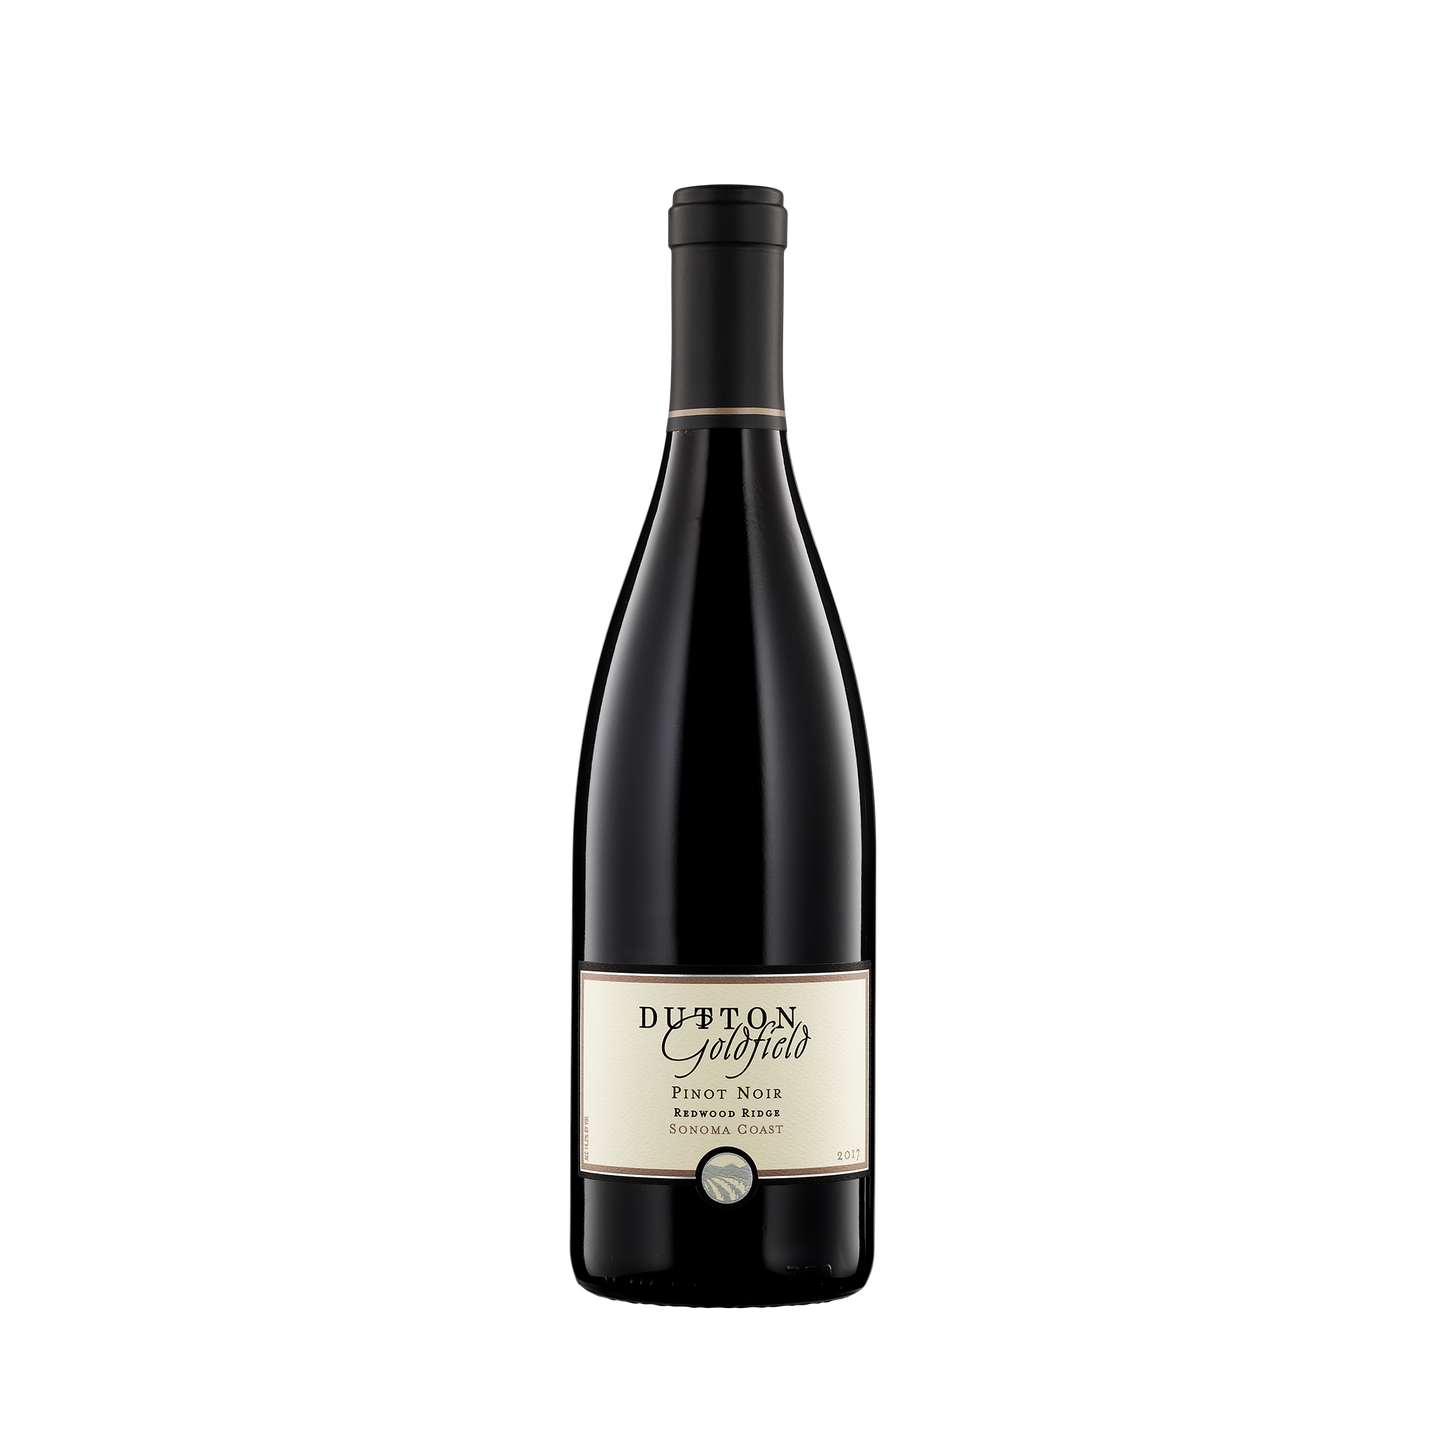 A bottle of Dutton-Goldfield 2017 Pinot Noir